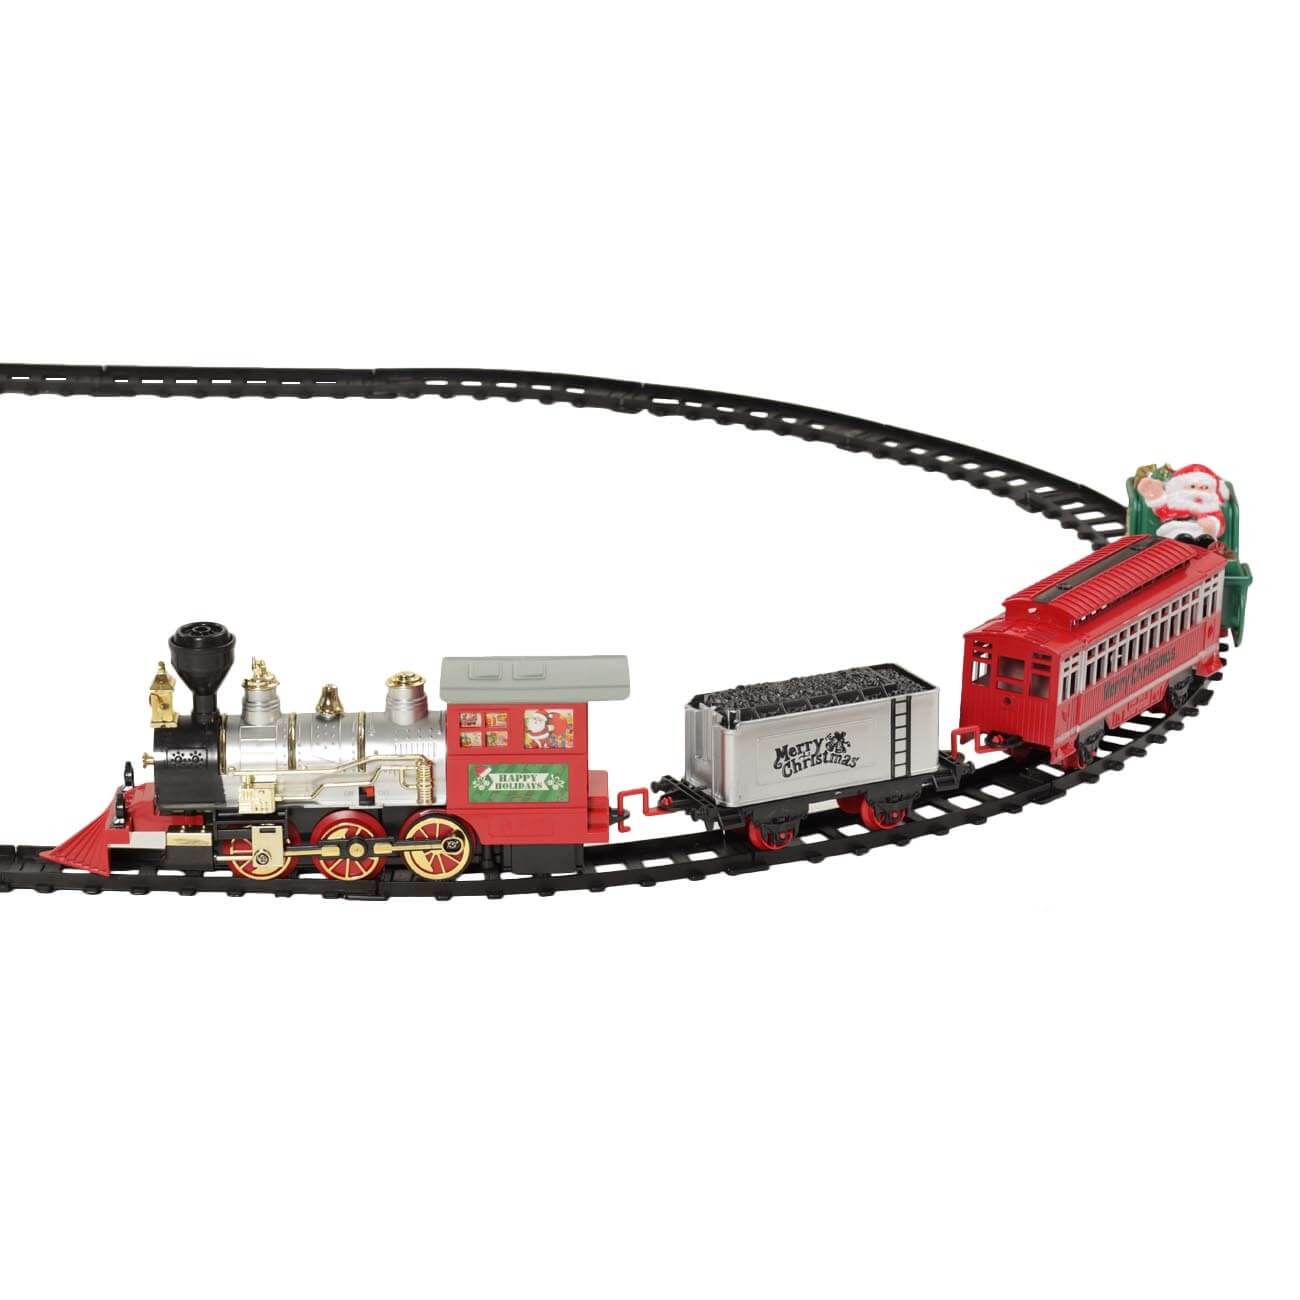 Железная дорога игрушечная, S, музыкальная, с подсветкой/дымом, пластик, Game rail железная дорога классический грузовой поезд с дымовыми эффектами протяжённость пути 2 72 м